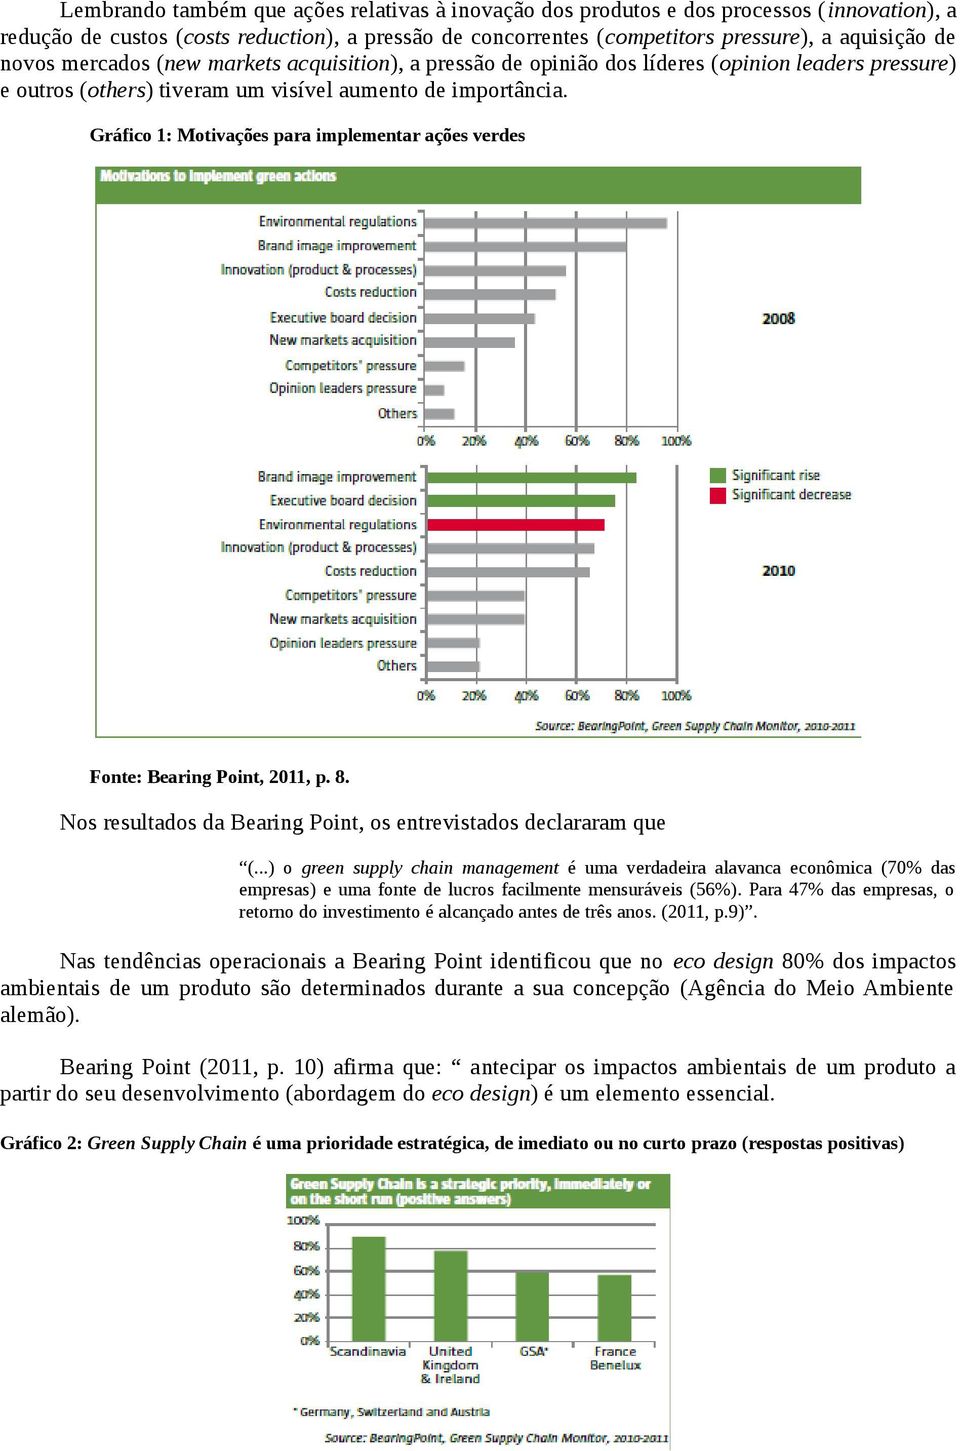 Gráfico 1: Motivações para implementar ações verdes Fonte: Bearing Point, 2011, p. 8. Nos resultados da Bearing Point, os entrevistados declararam que (.